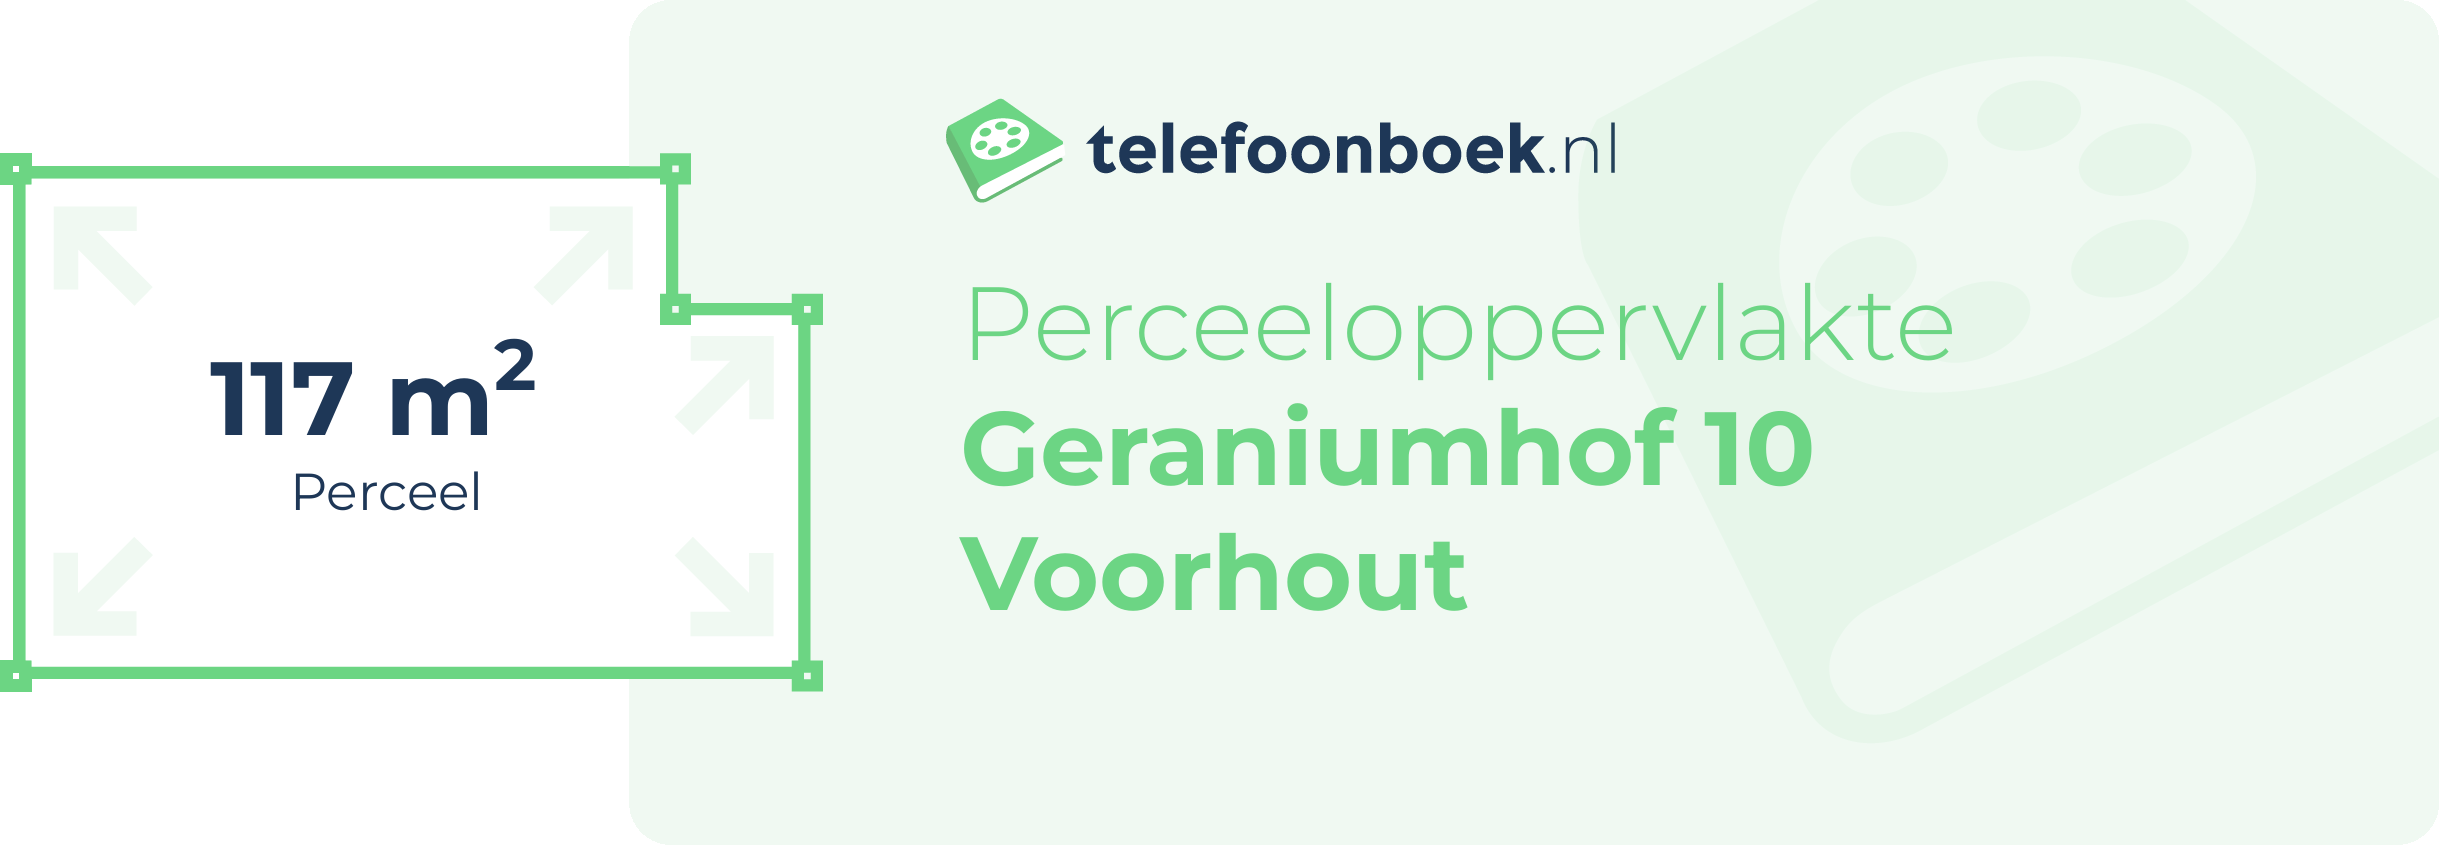 Perceeloppervlakte Geraniumhof 10 Voorhout